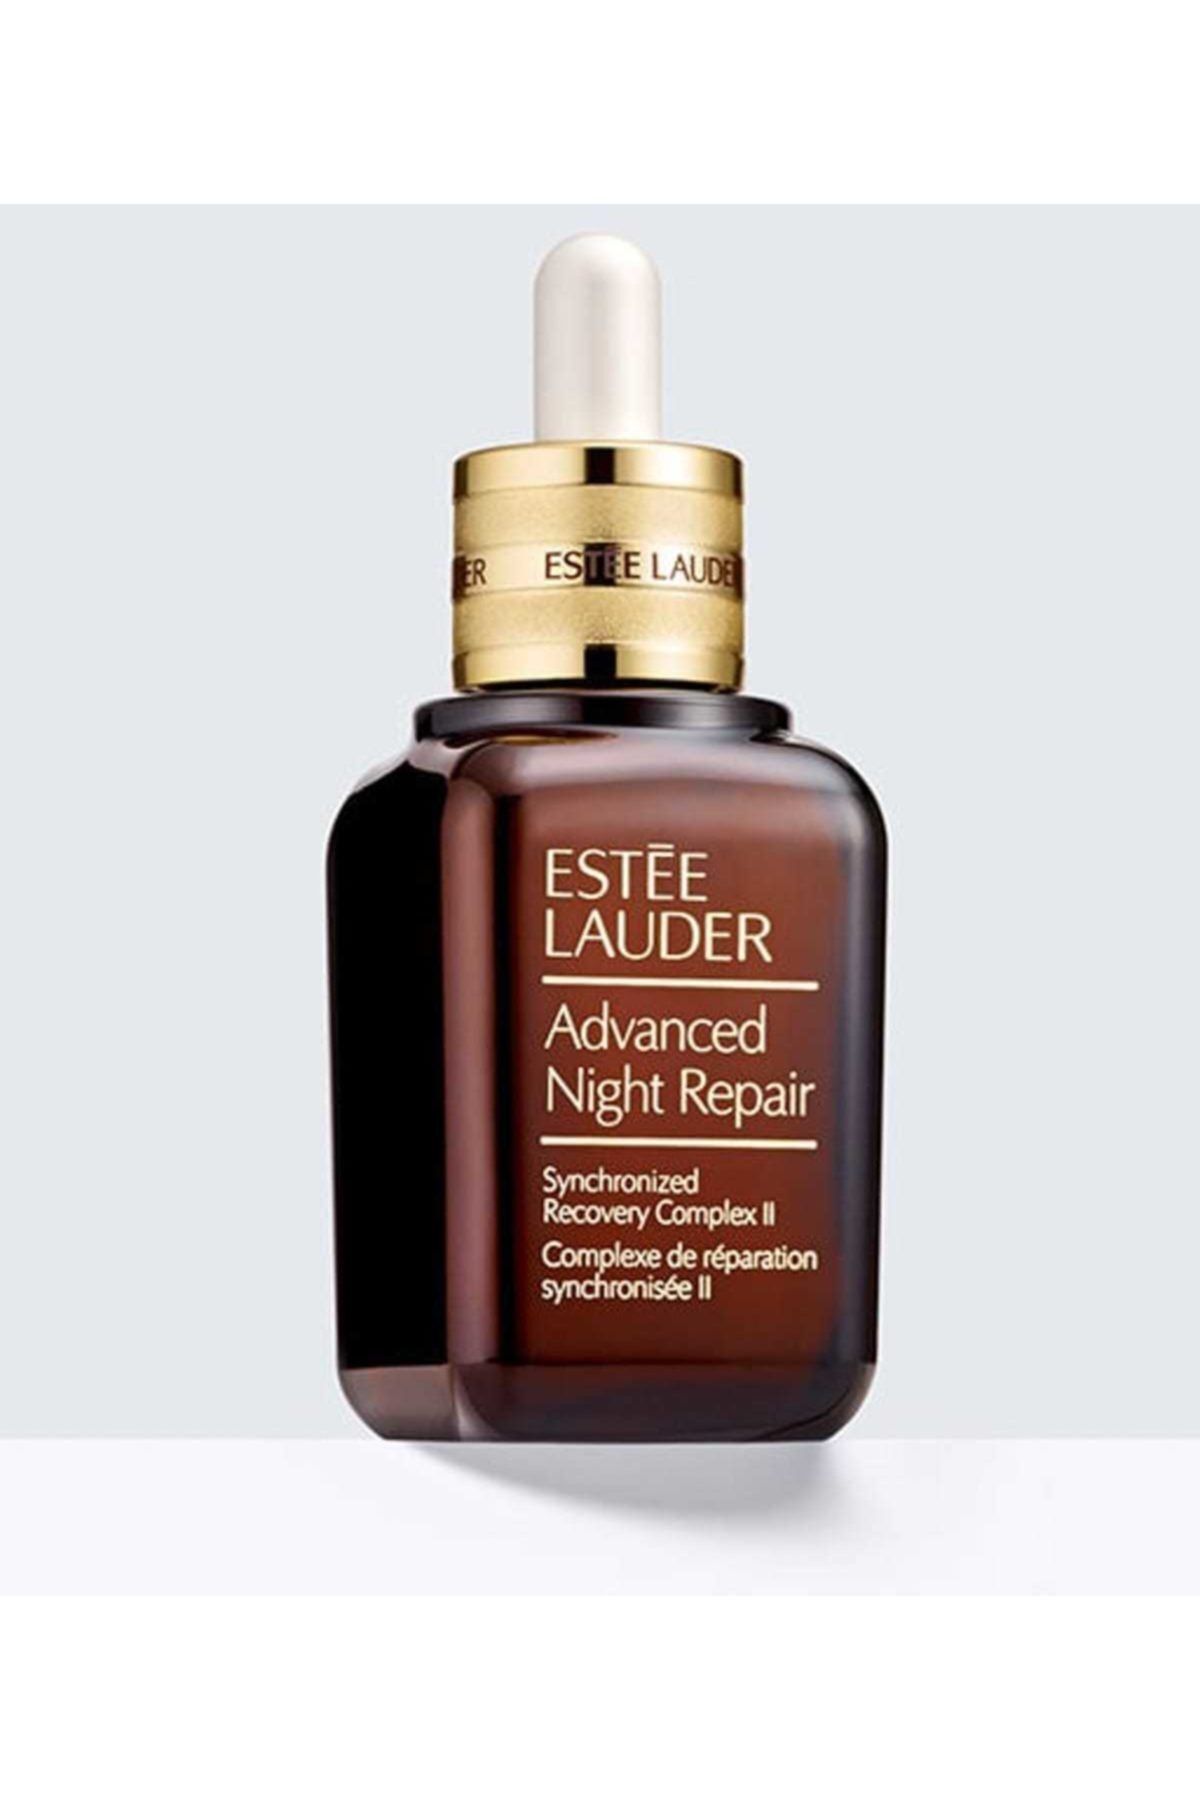 Estee Lauder 50 ml Advanced Night Repair Serum E Lauder